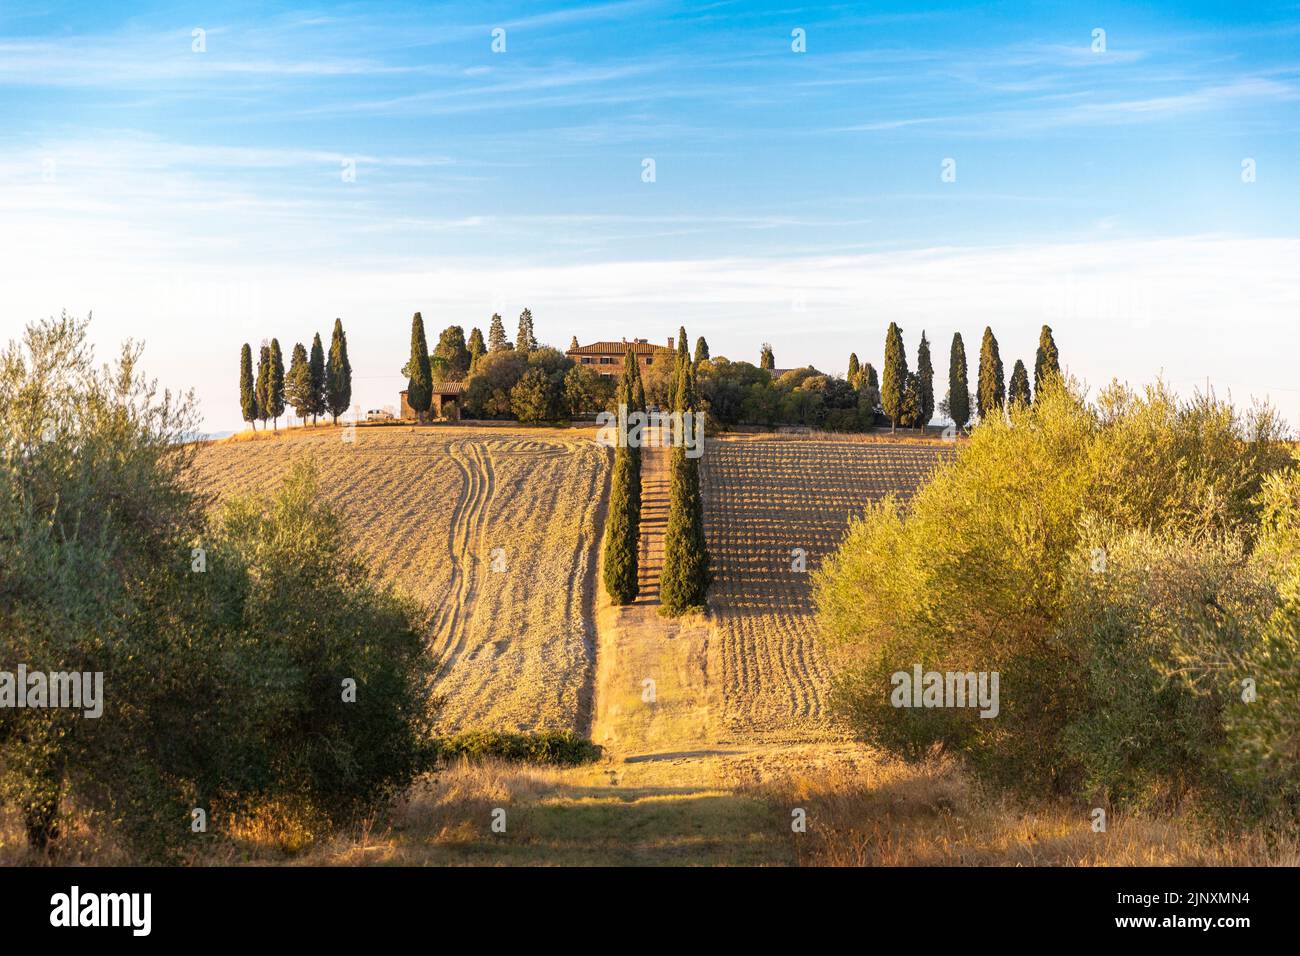 Paysage toscan avec cyprès, célèbre du film Gladiator Banque D'Images